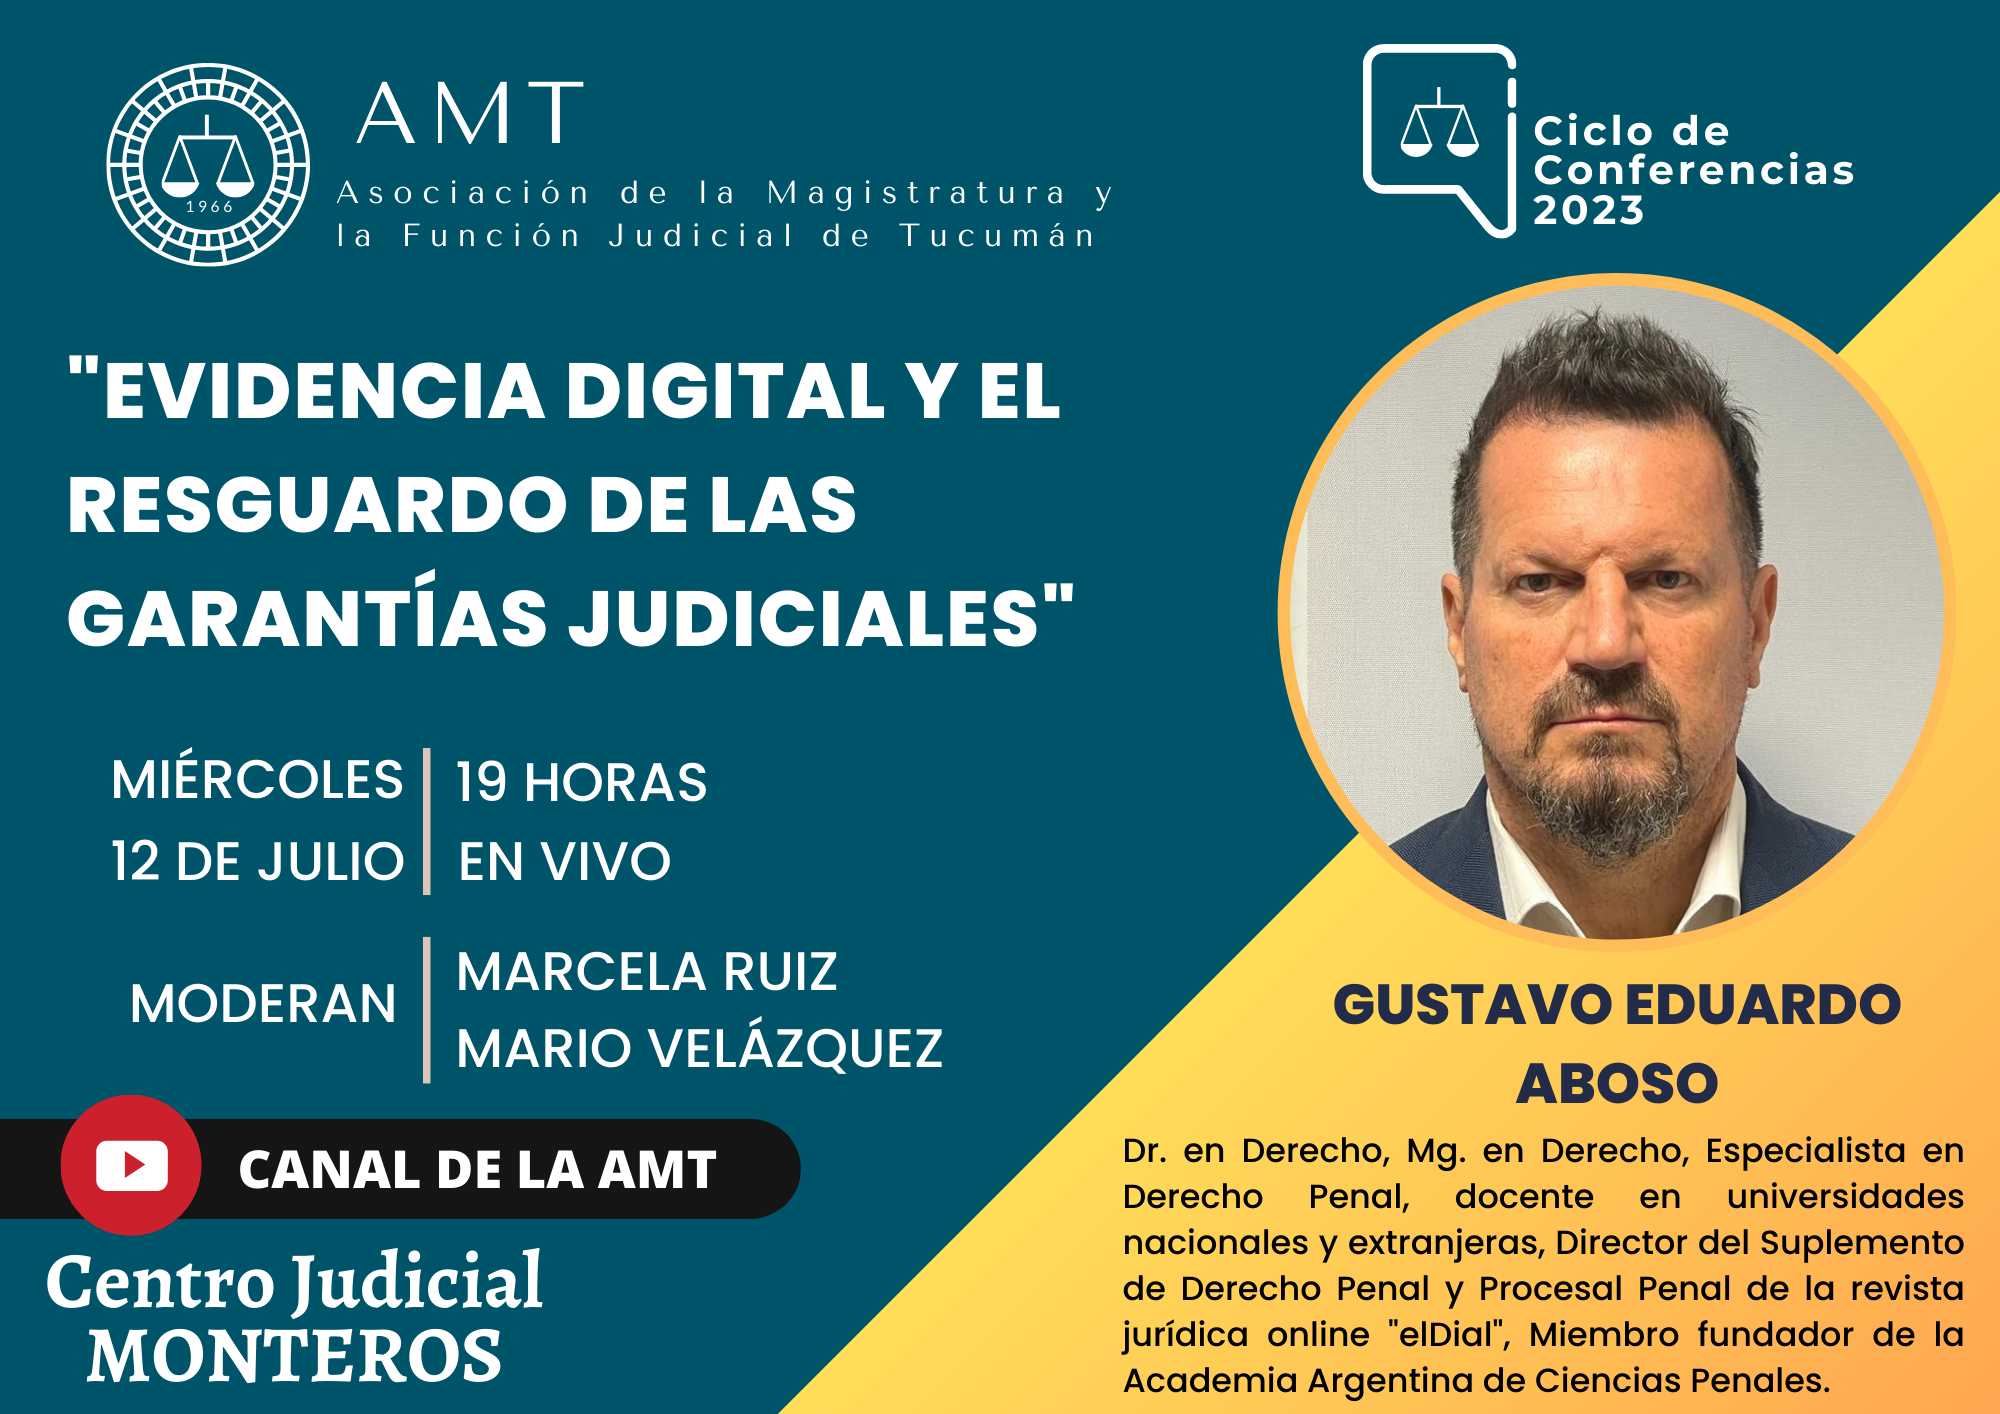 Vuelva a ver la conferencia de Gustavo Eduardo Aboso «Evidencia digital y el resguardo de las garantías judiciales»